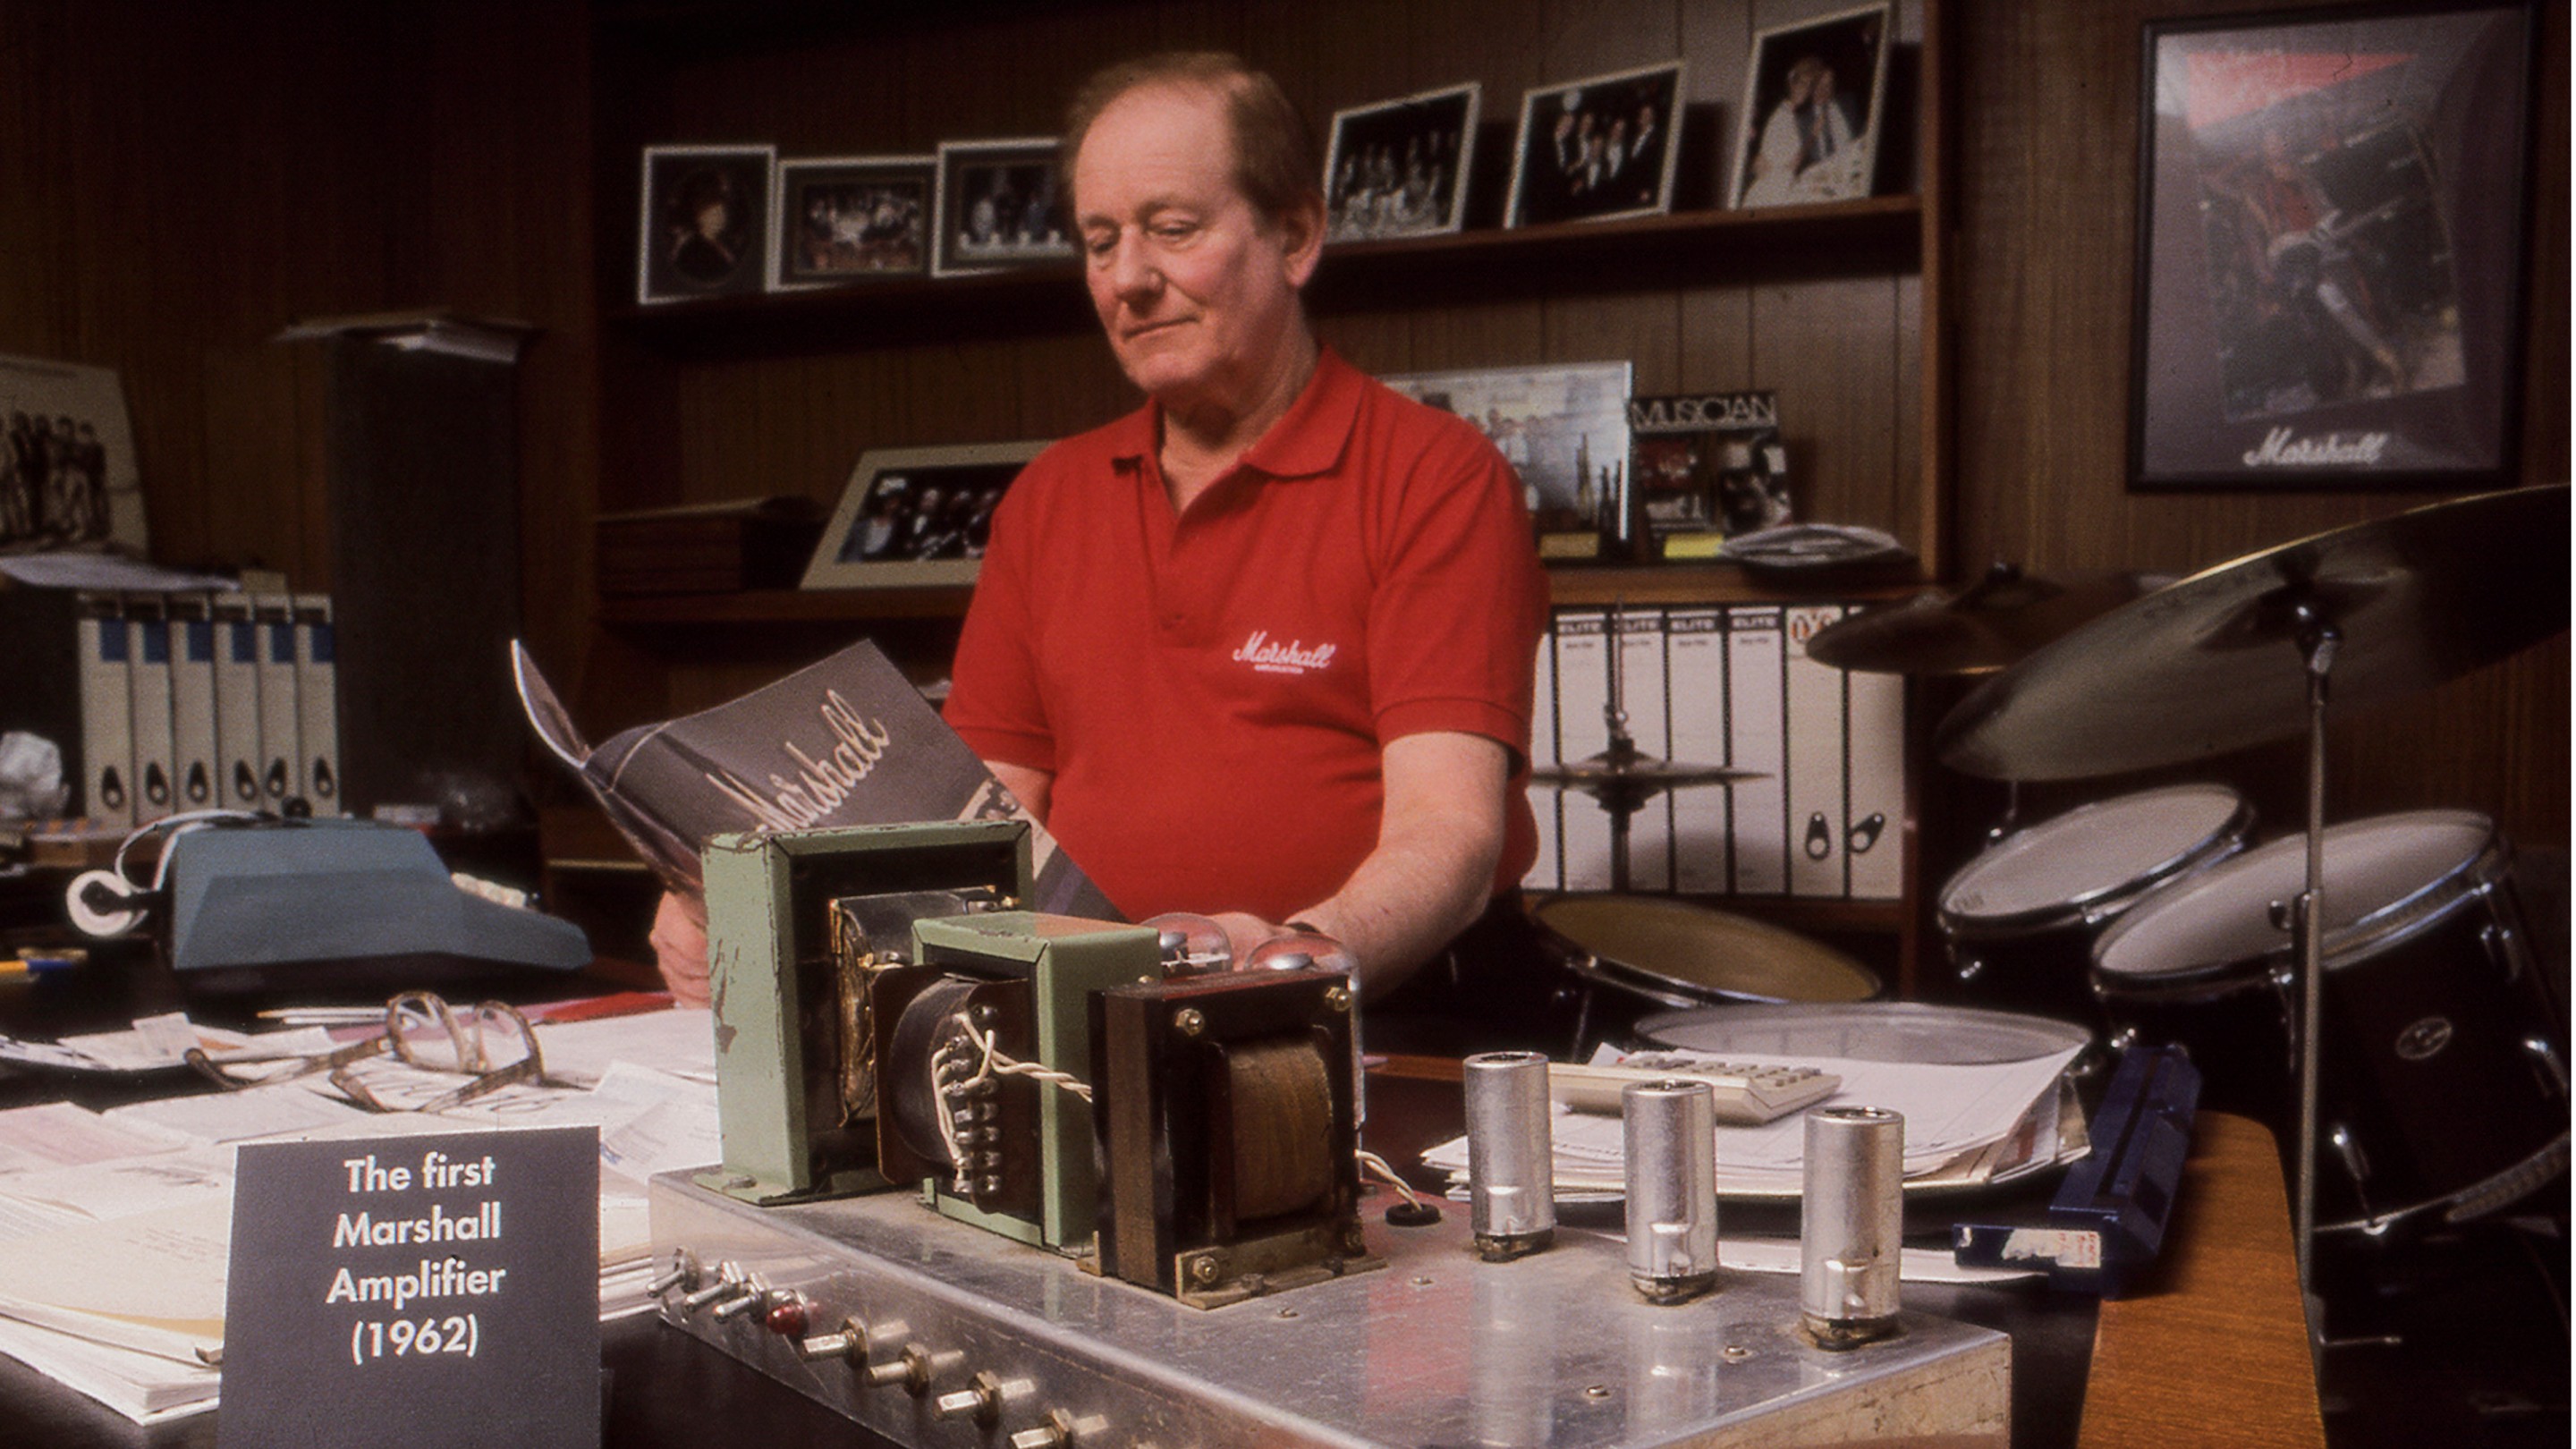 Jim Marshall delante del amplificador Marshall número uno